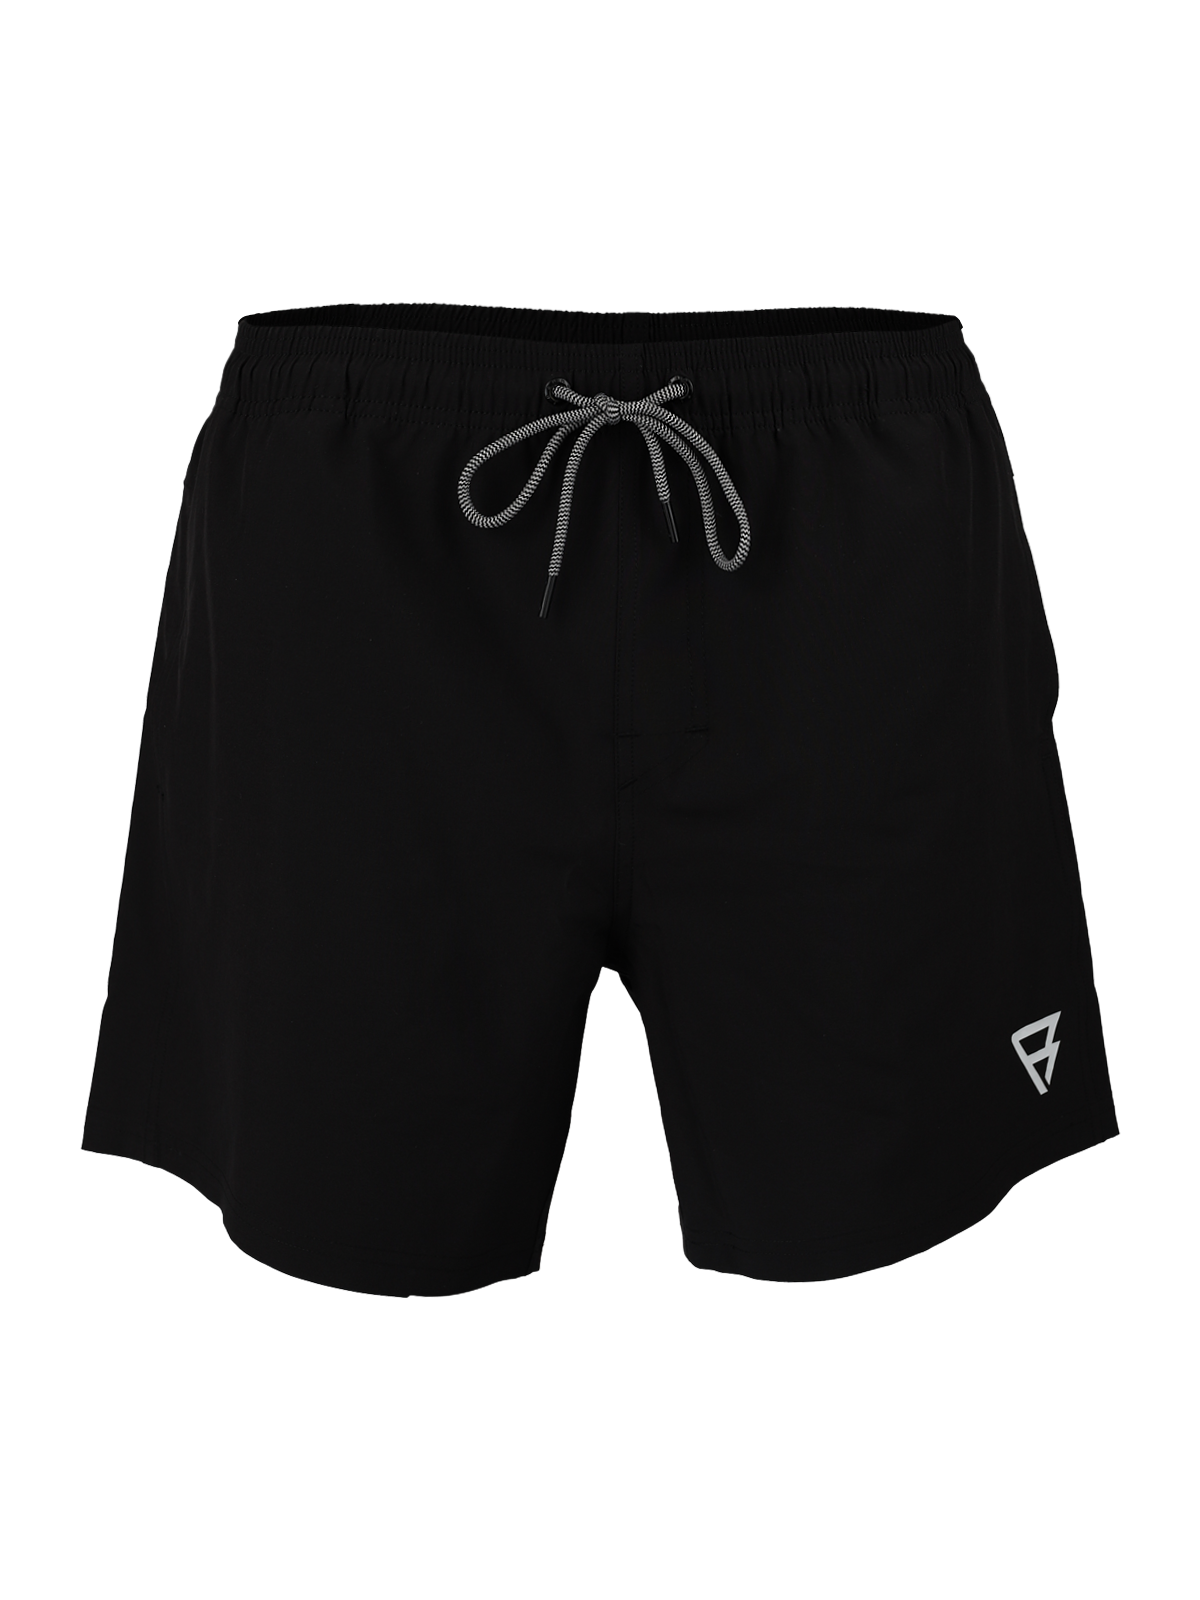 Calaro-R Men Swim Shorts | Black